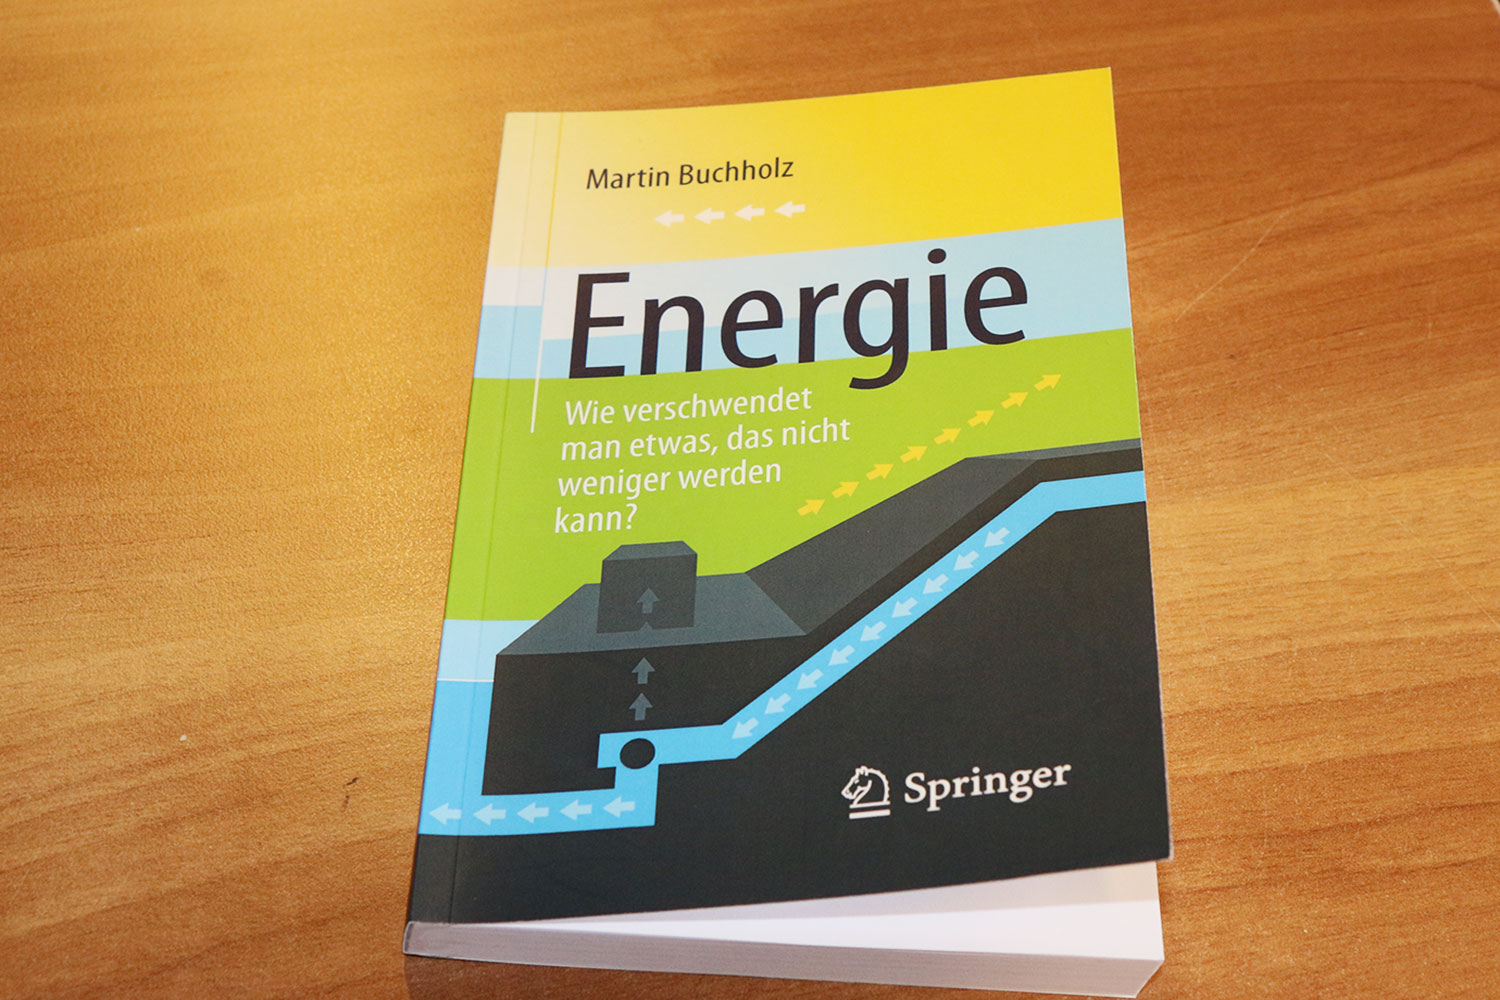 Das Bild zeigt das Cover des Buches "Energie. Wie verschwendet man etwas, das nicht weniger werden kann?"